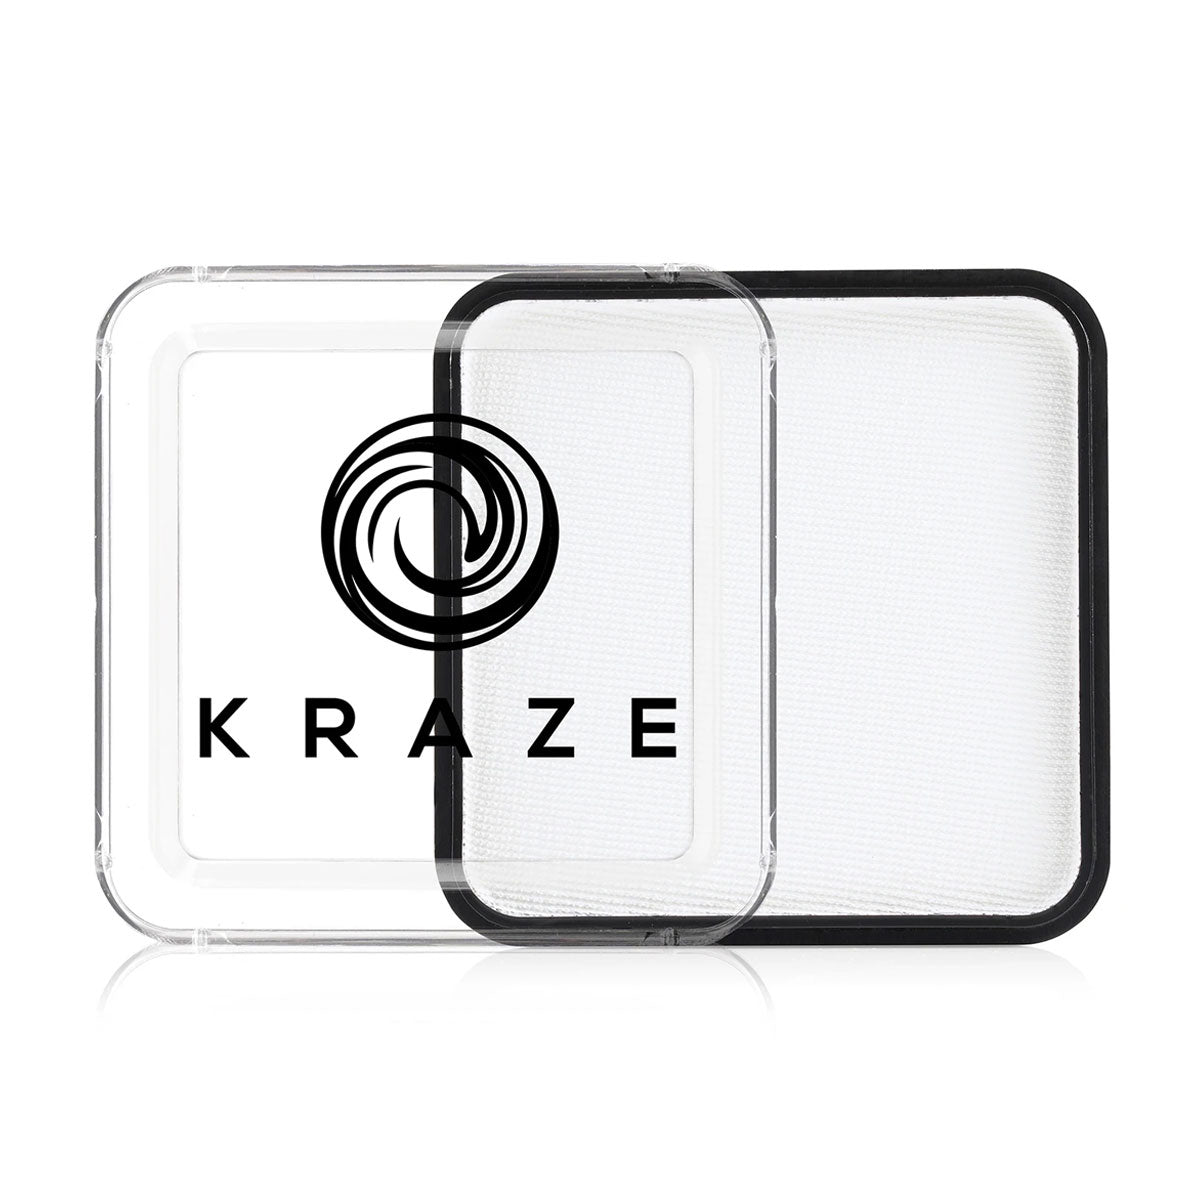 White Square 50g - Kraze